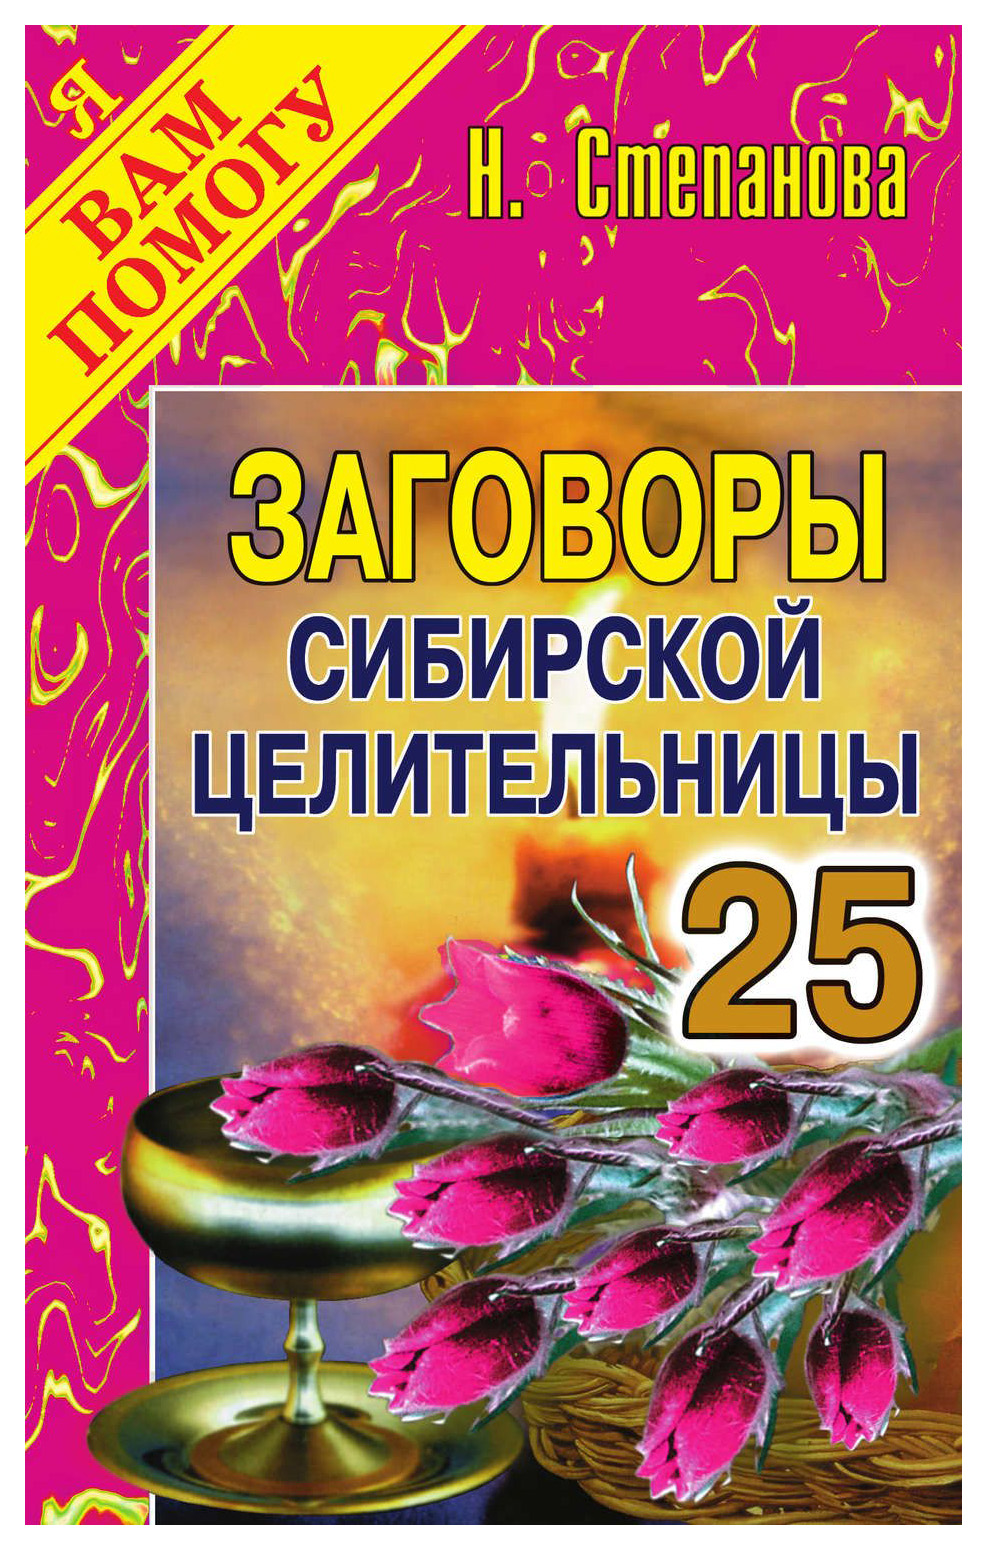 Сайт сибирской целительницы